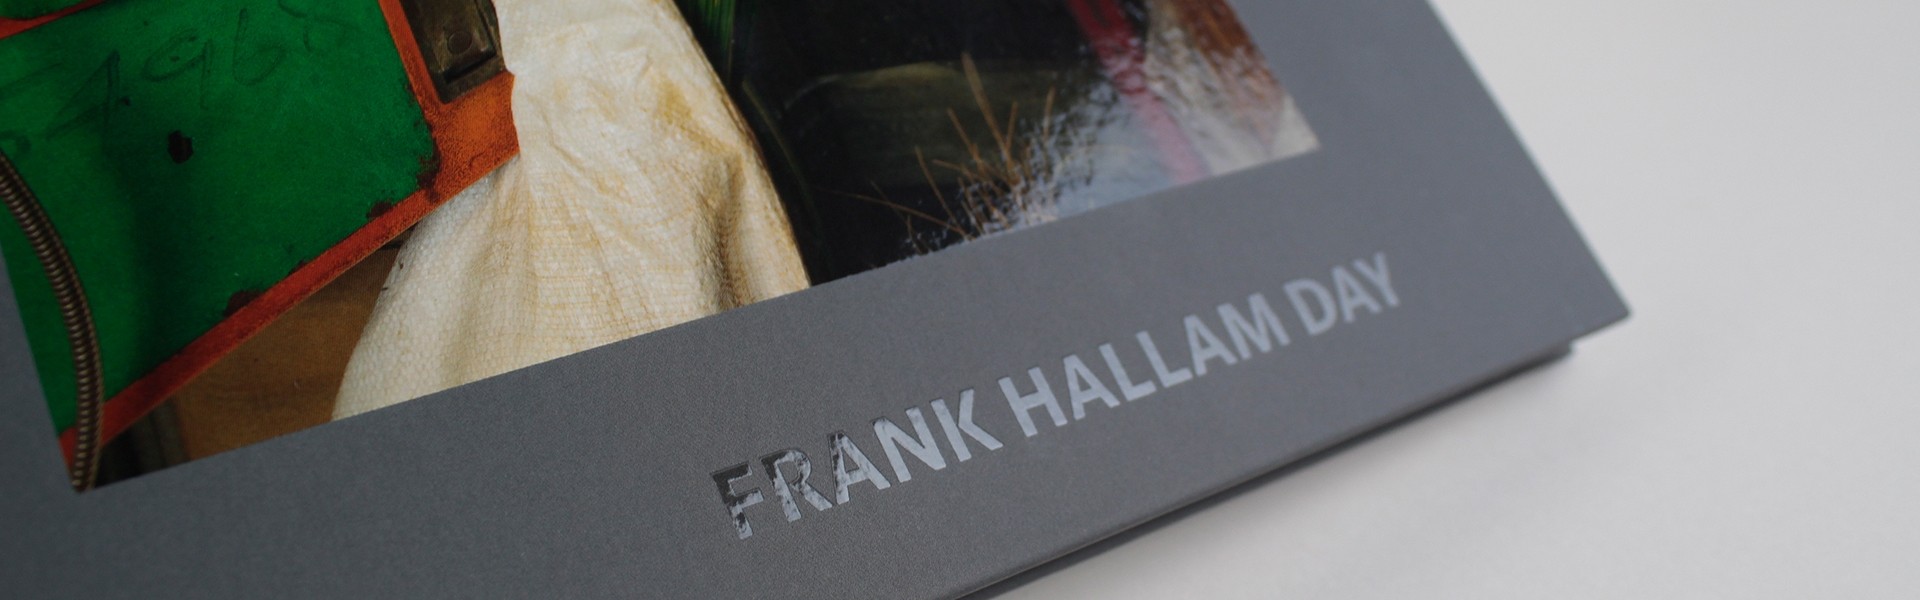 Frank Hallam Day Bangkok – Call Waiting 